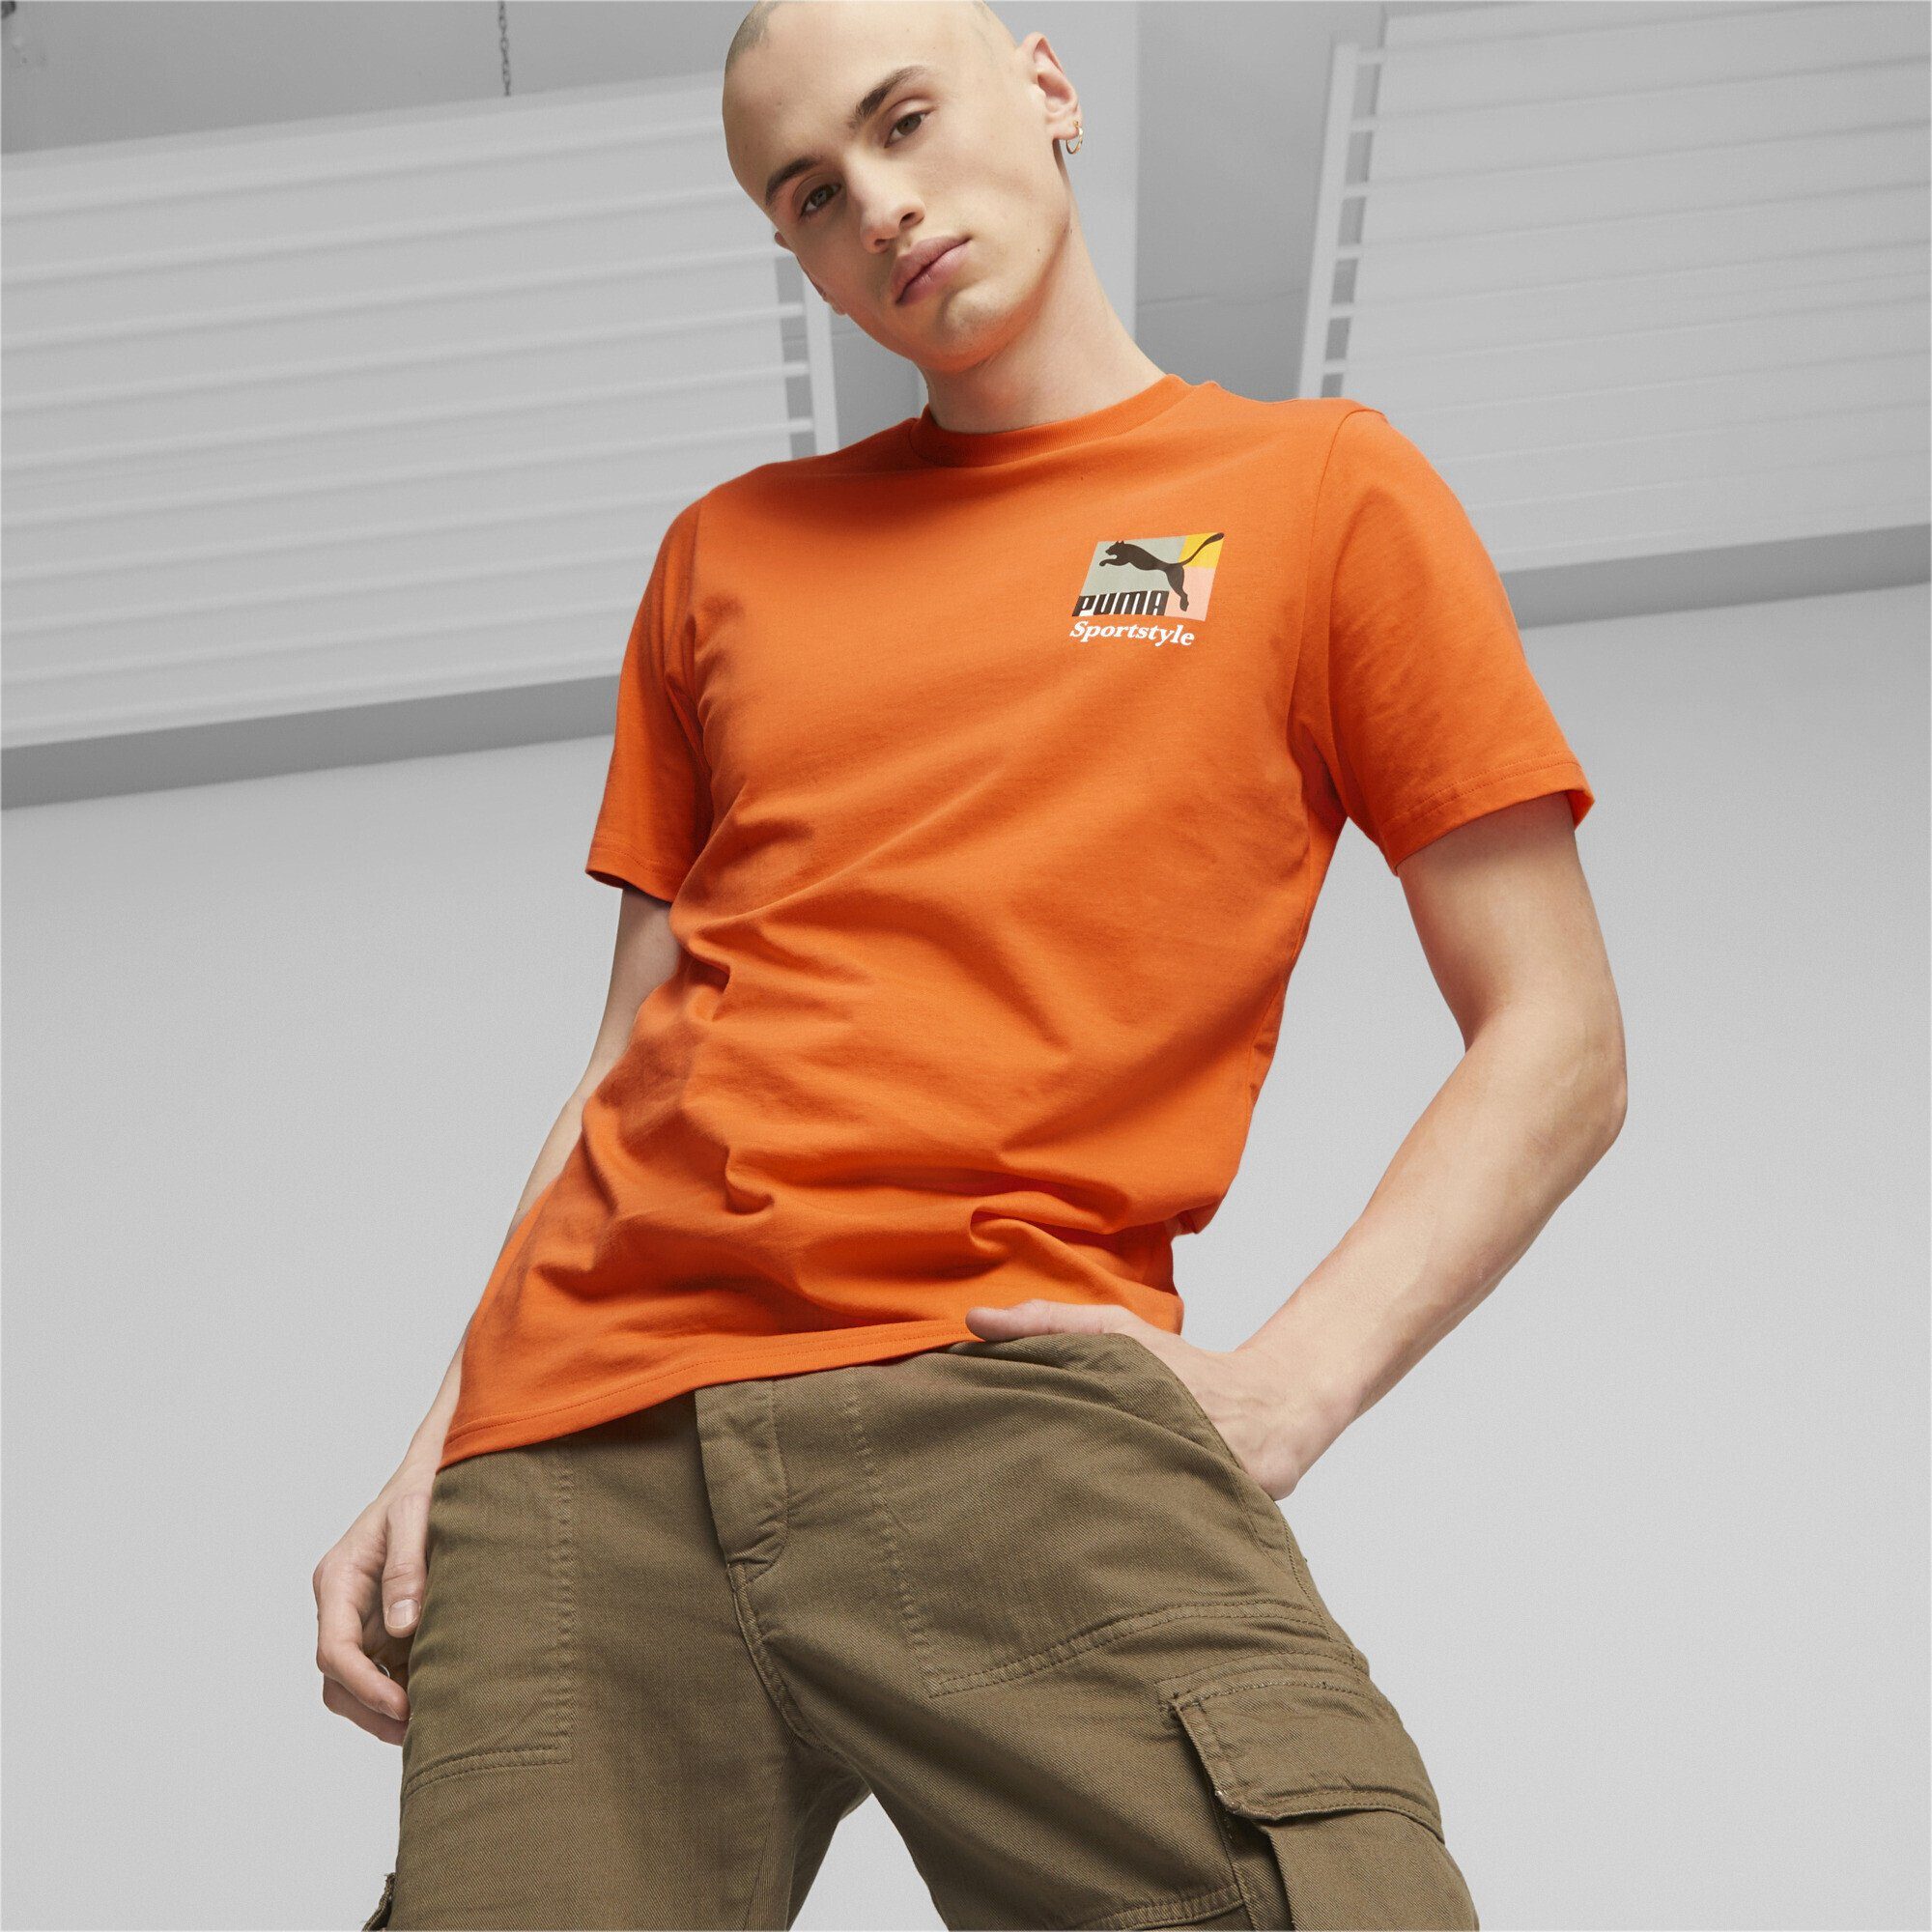 PUMA T-Shirt Brand Herren Hot T-Shirt Classics Love Orange Heat